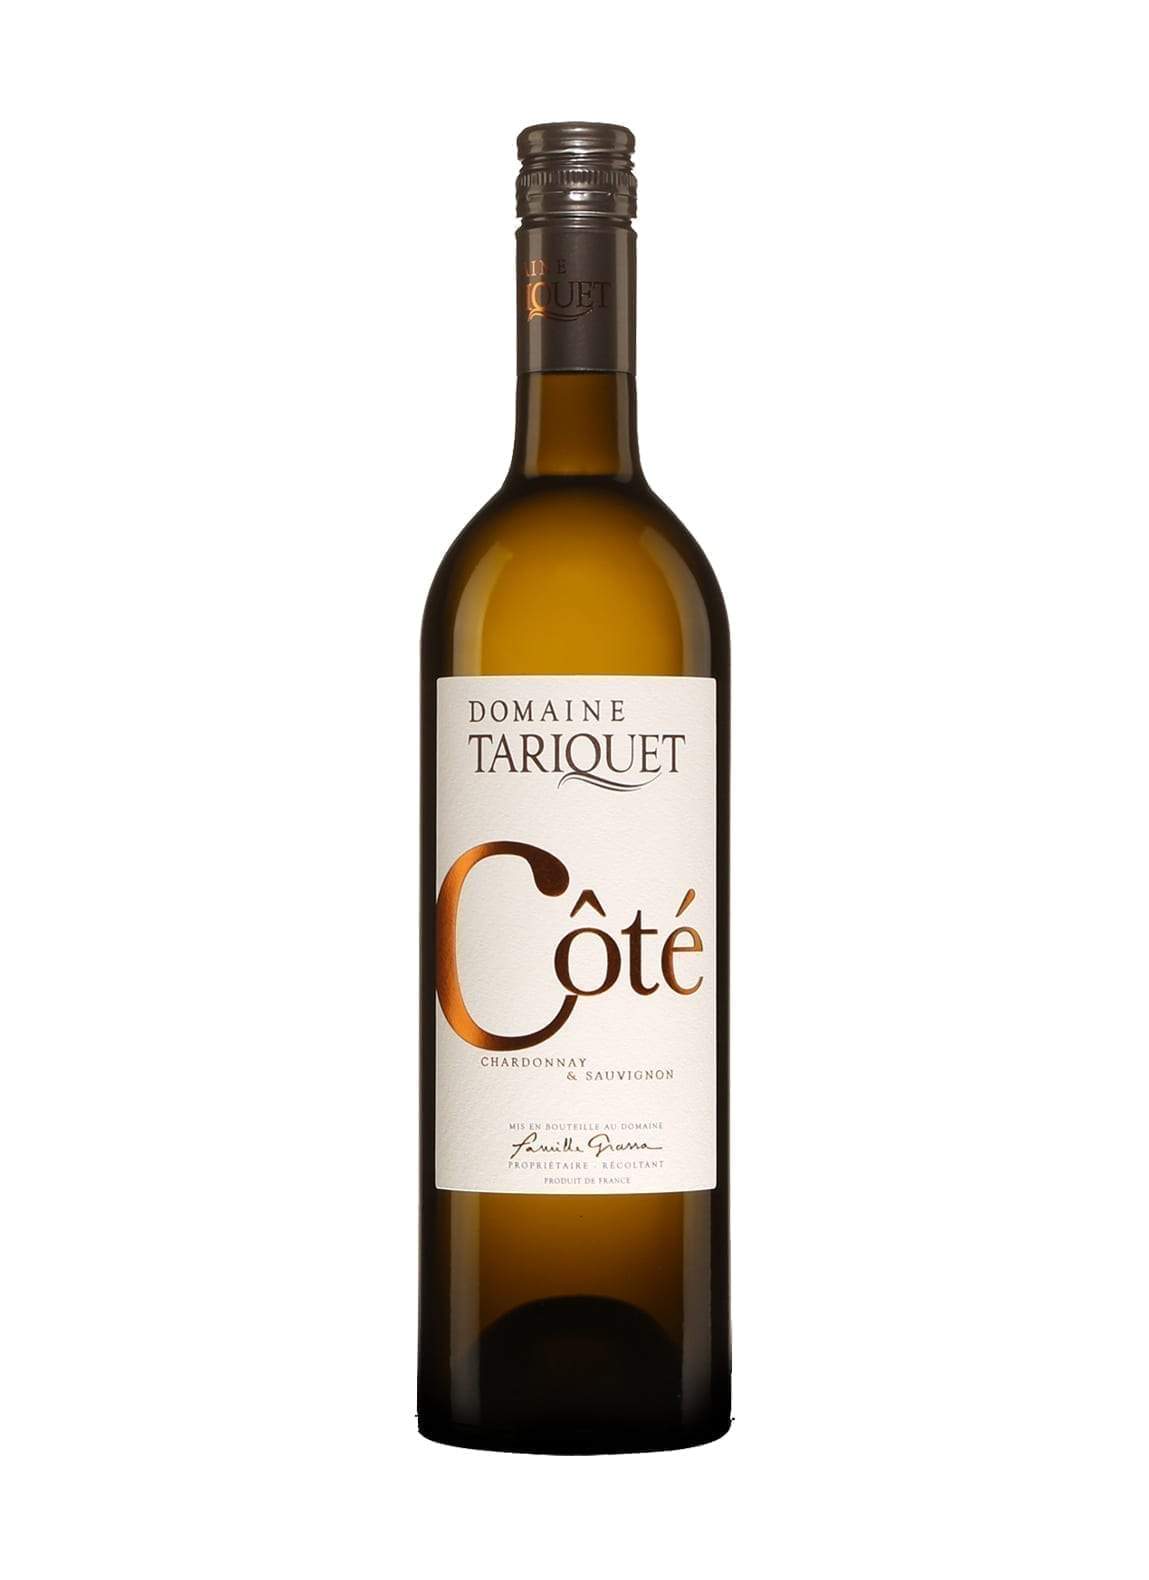 Domaine Tariquet White Wine coté 11.5% 750ml | Wine | Shop online at Spirits of France